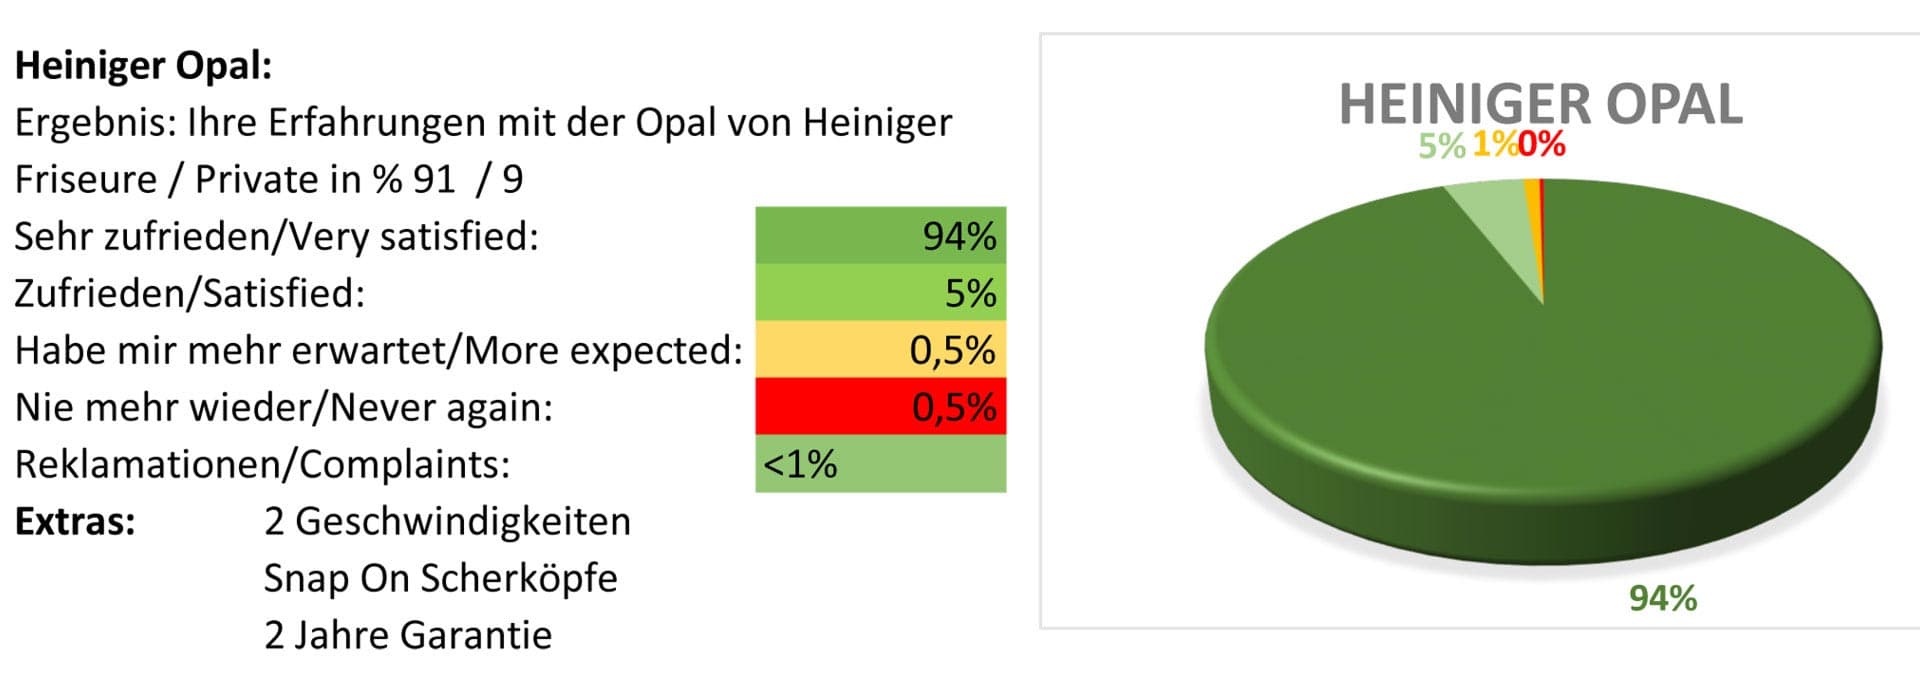 Heiniger Opal pet clipper test report